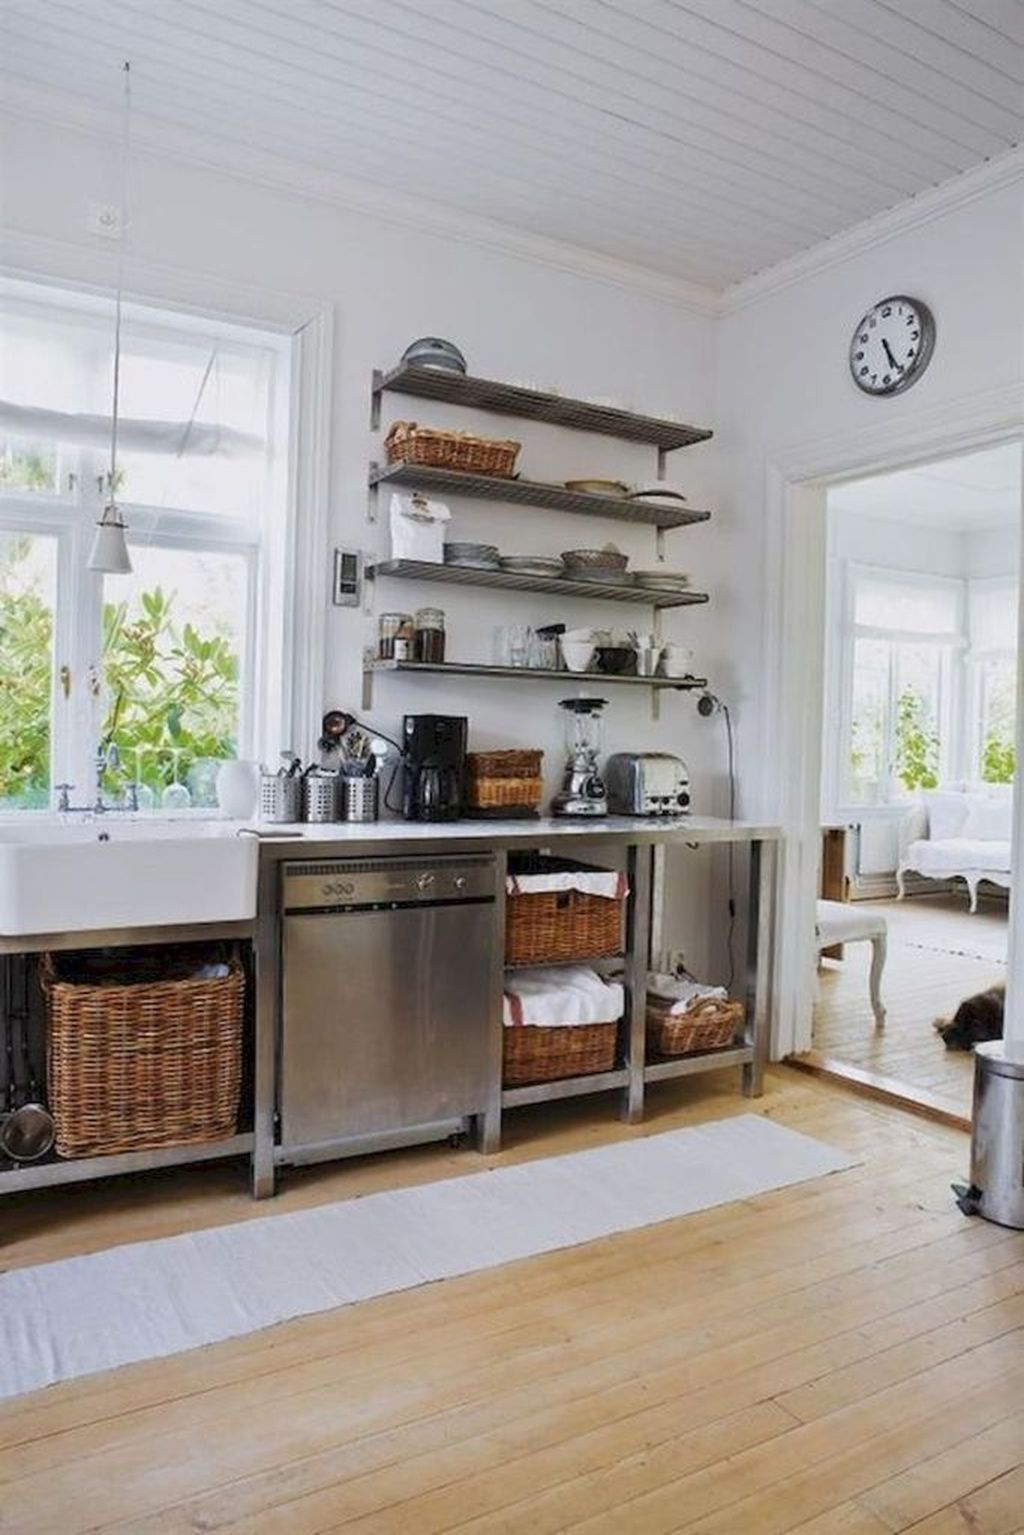 Wonderful Industrial Kitchen Shelf Design Ideas To Organize Your Kitchen03